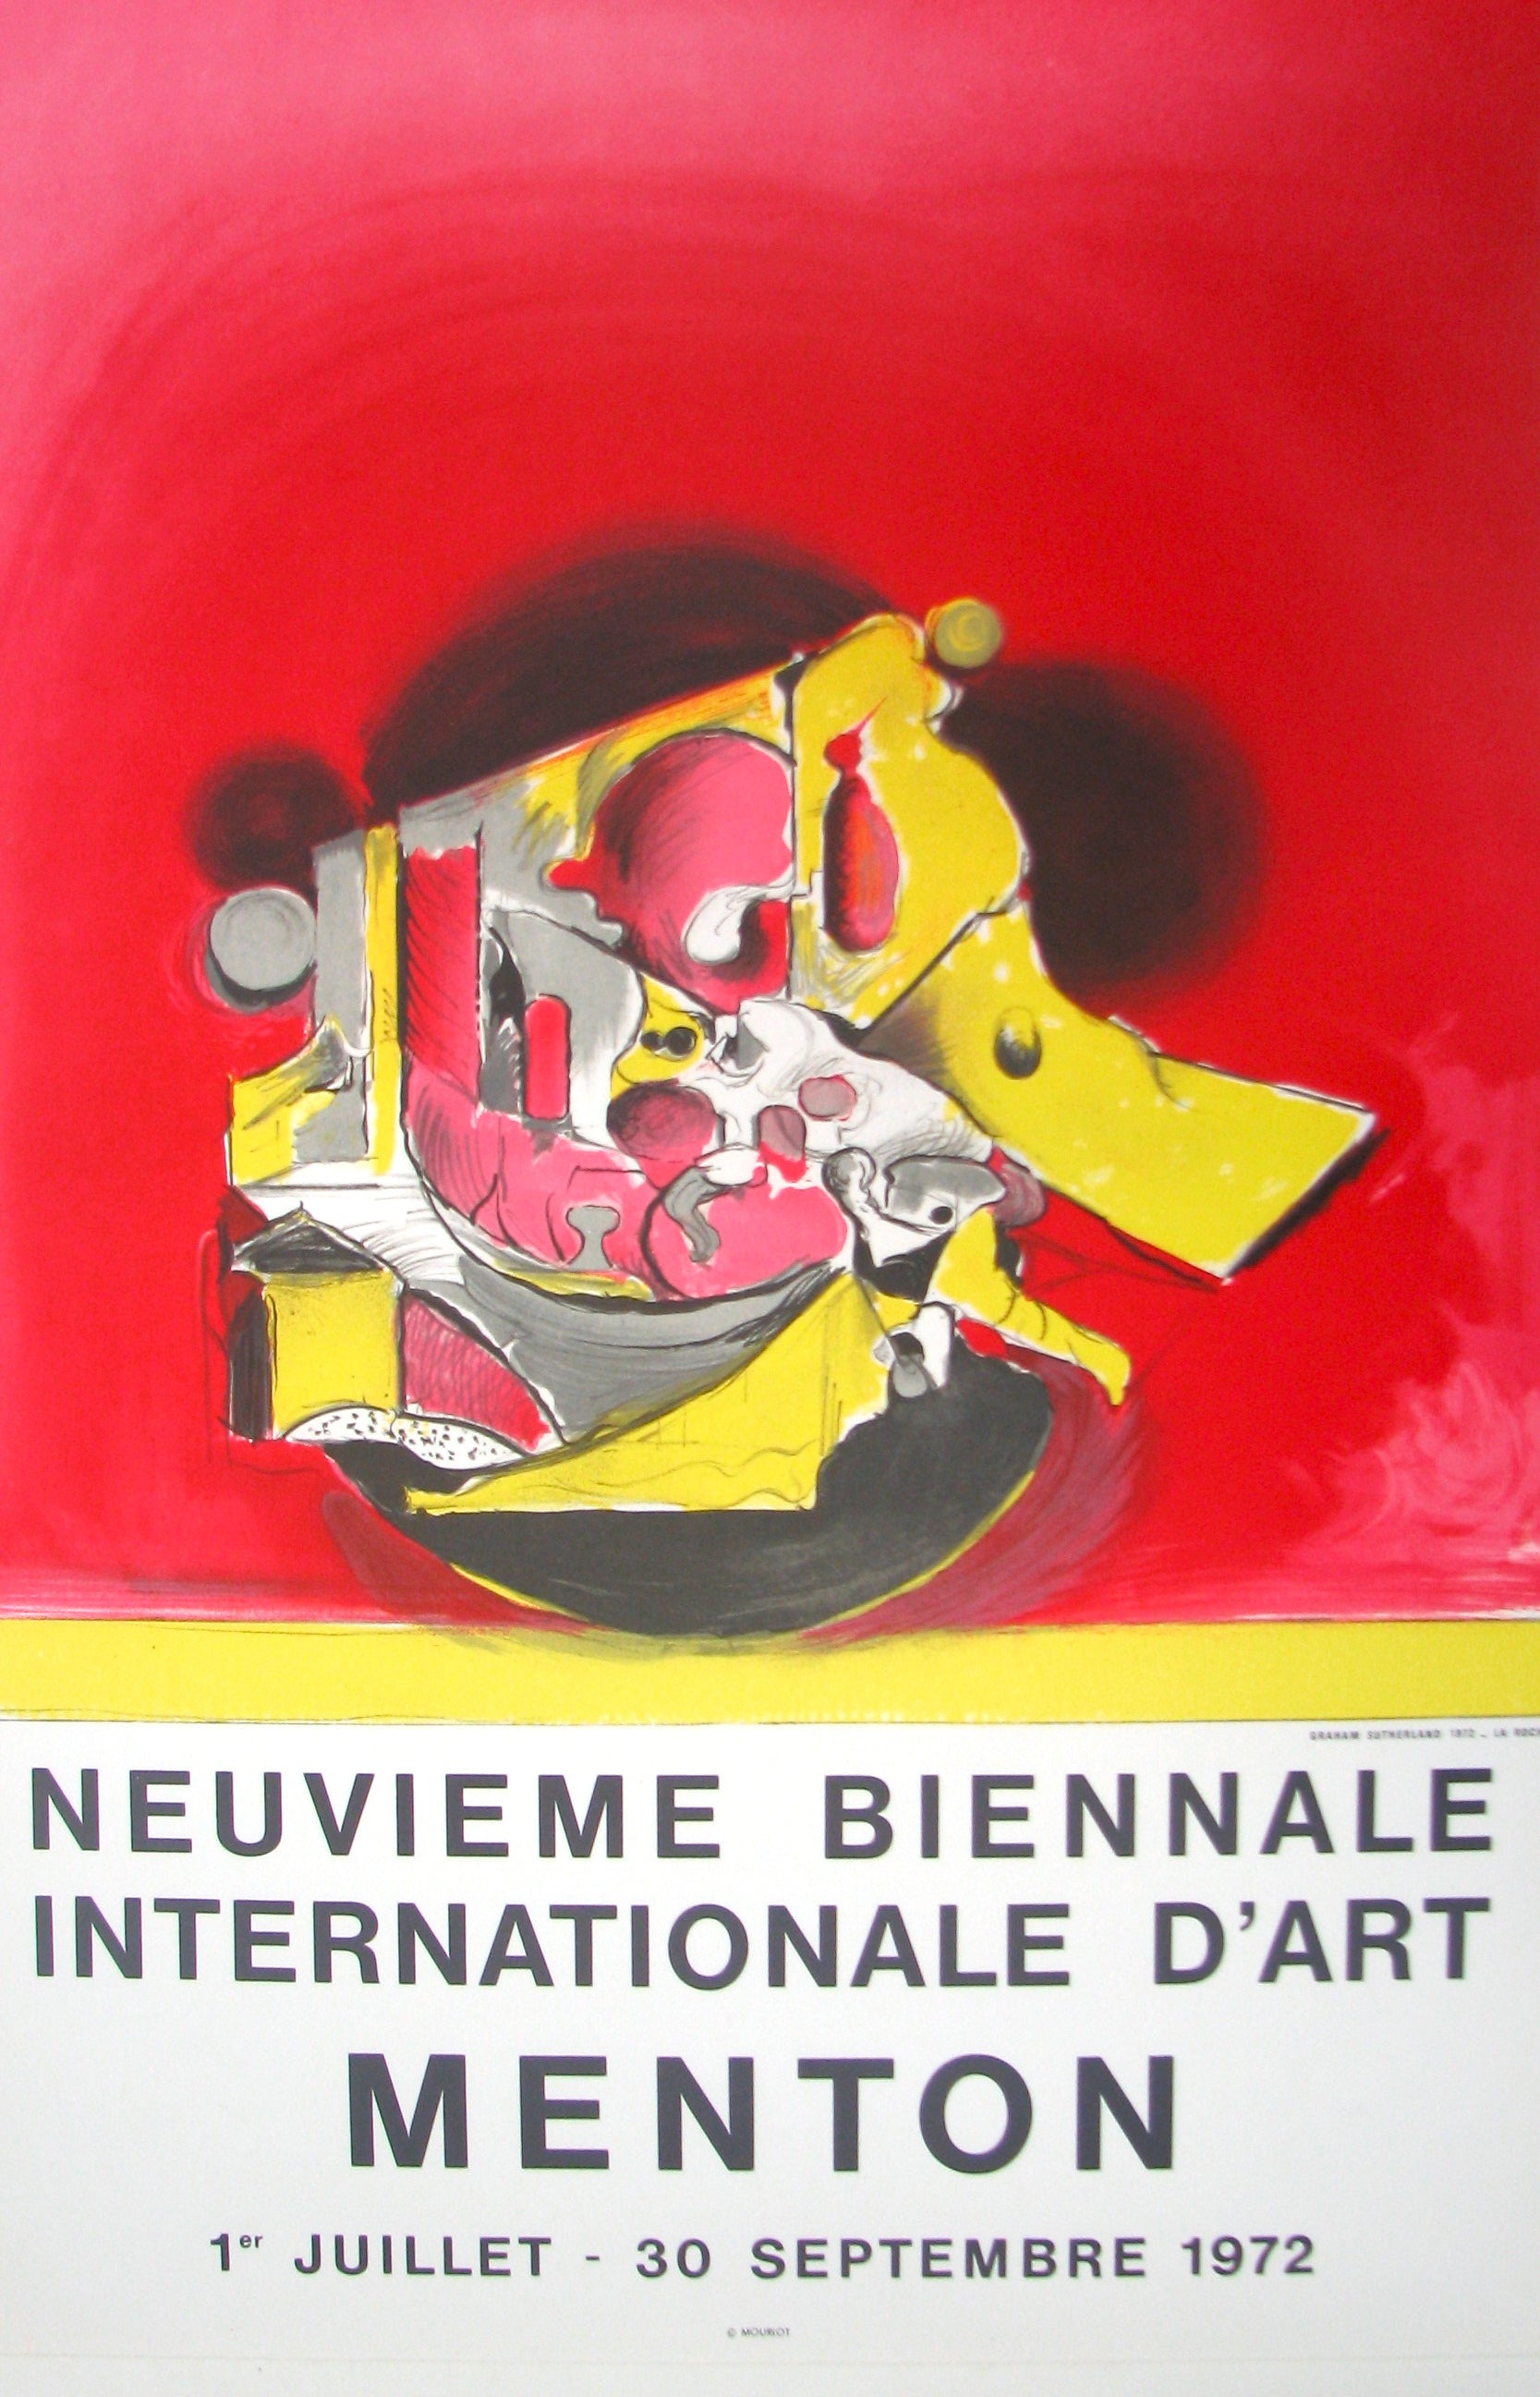 La Roche - Neuvième Biennale d'Art - Menton by Graham Sutherland, 1972 - Mourlot Editions - Fine_Art - Poster - Lithograph - Wall Art - Vintage - Prints - Original